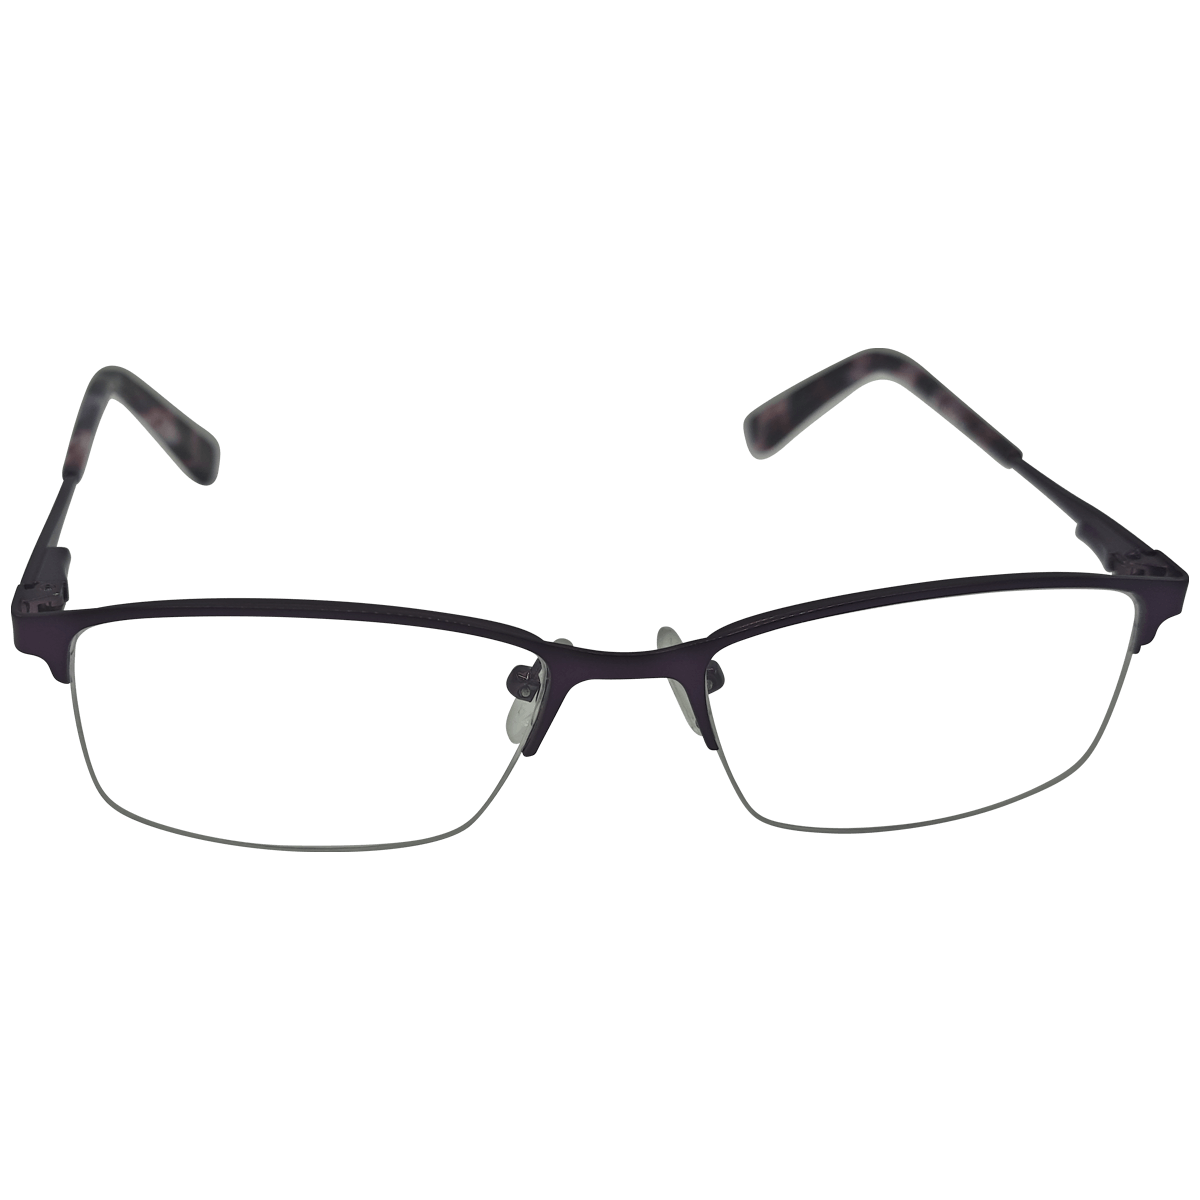 Buy Dior eyeglasses from Nine Optic.